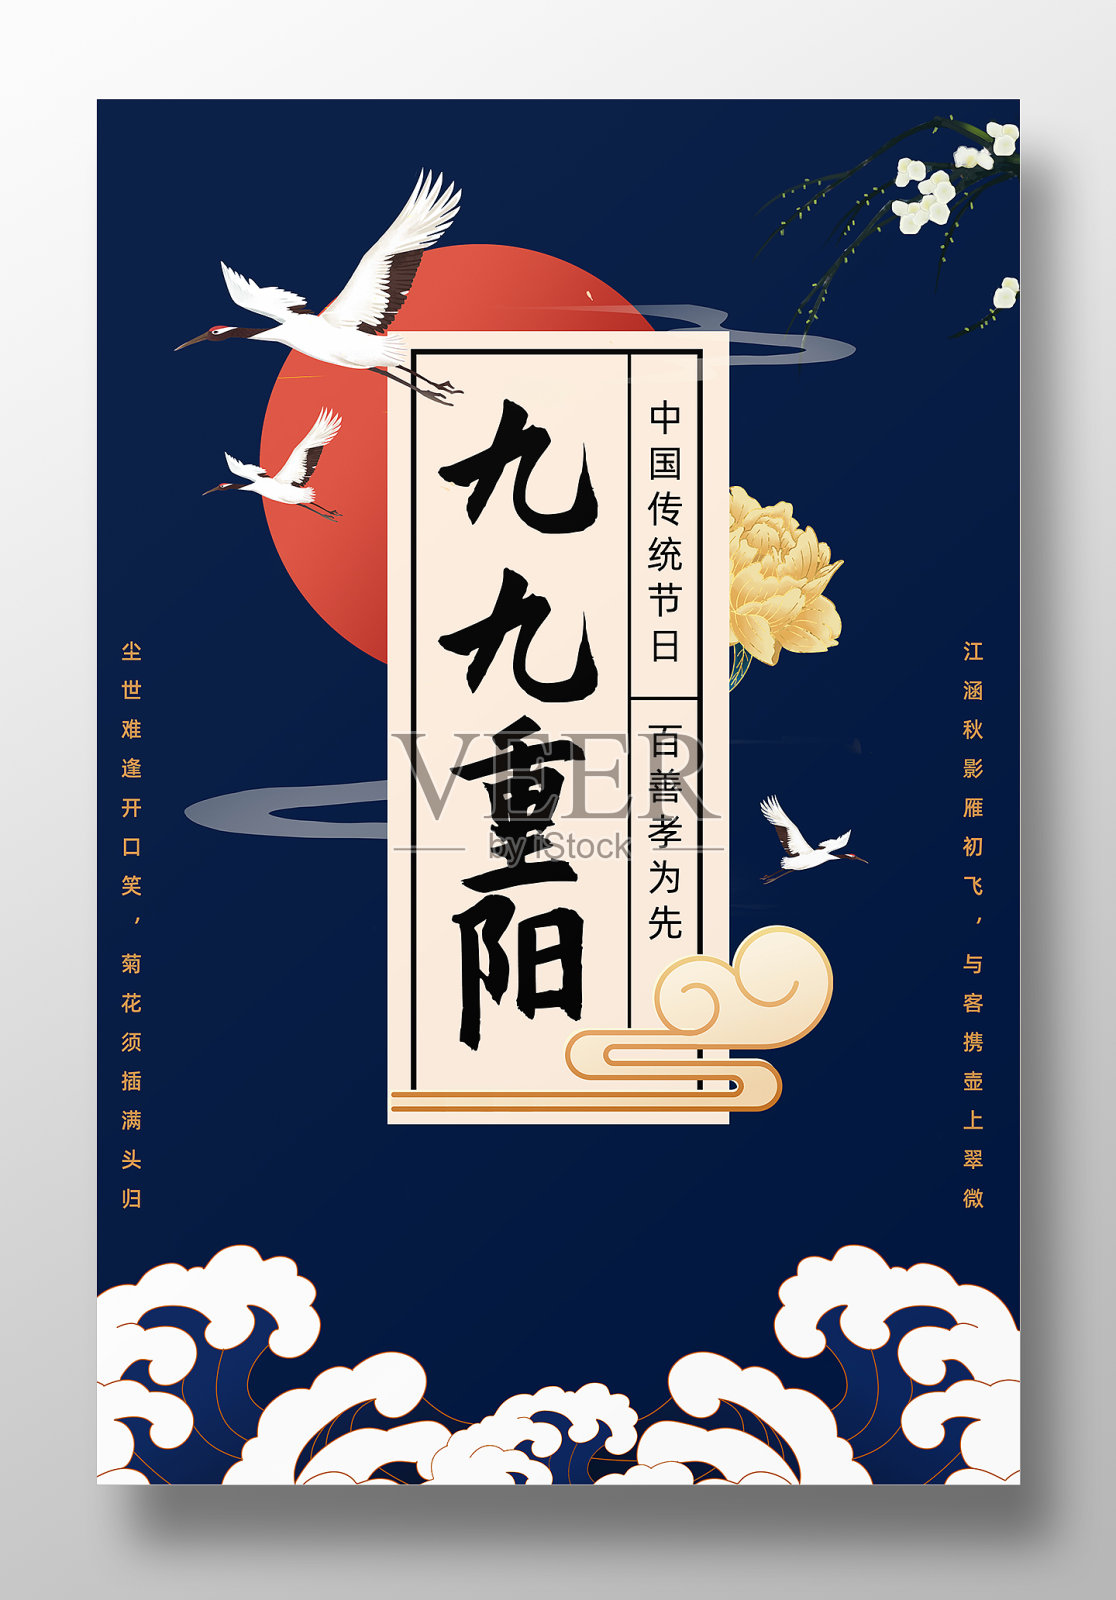 九九重阳节宣传海报设计模板素材